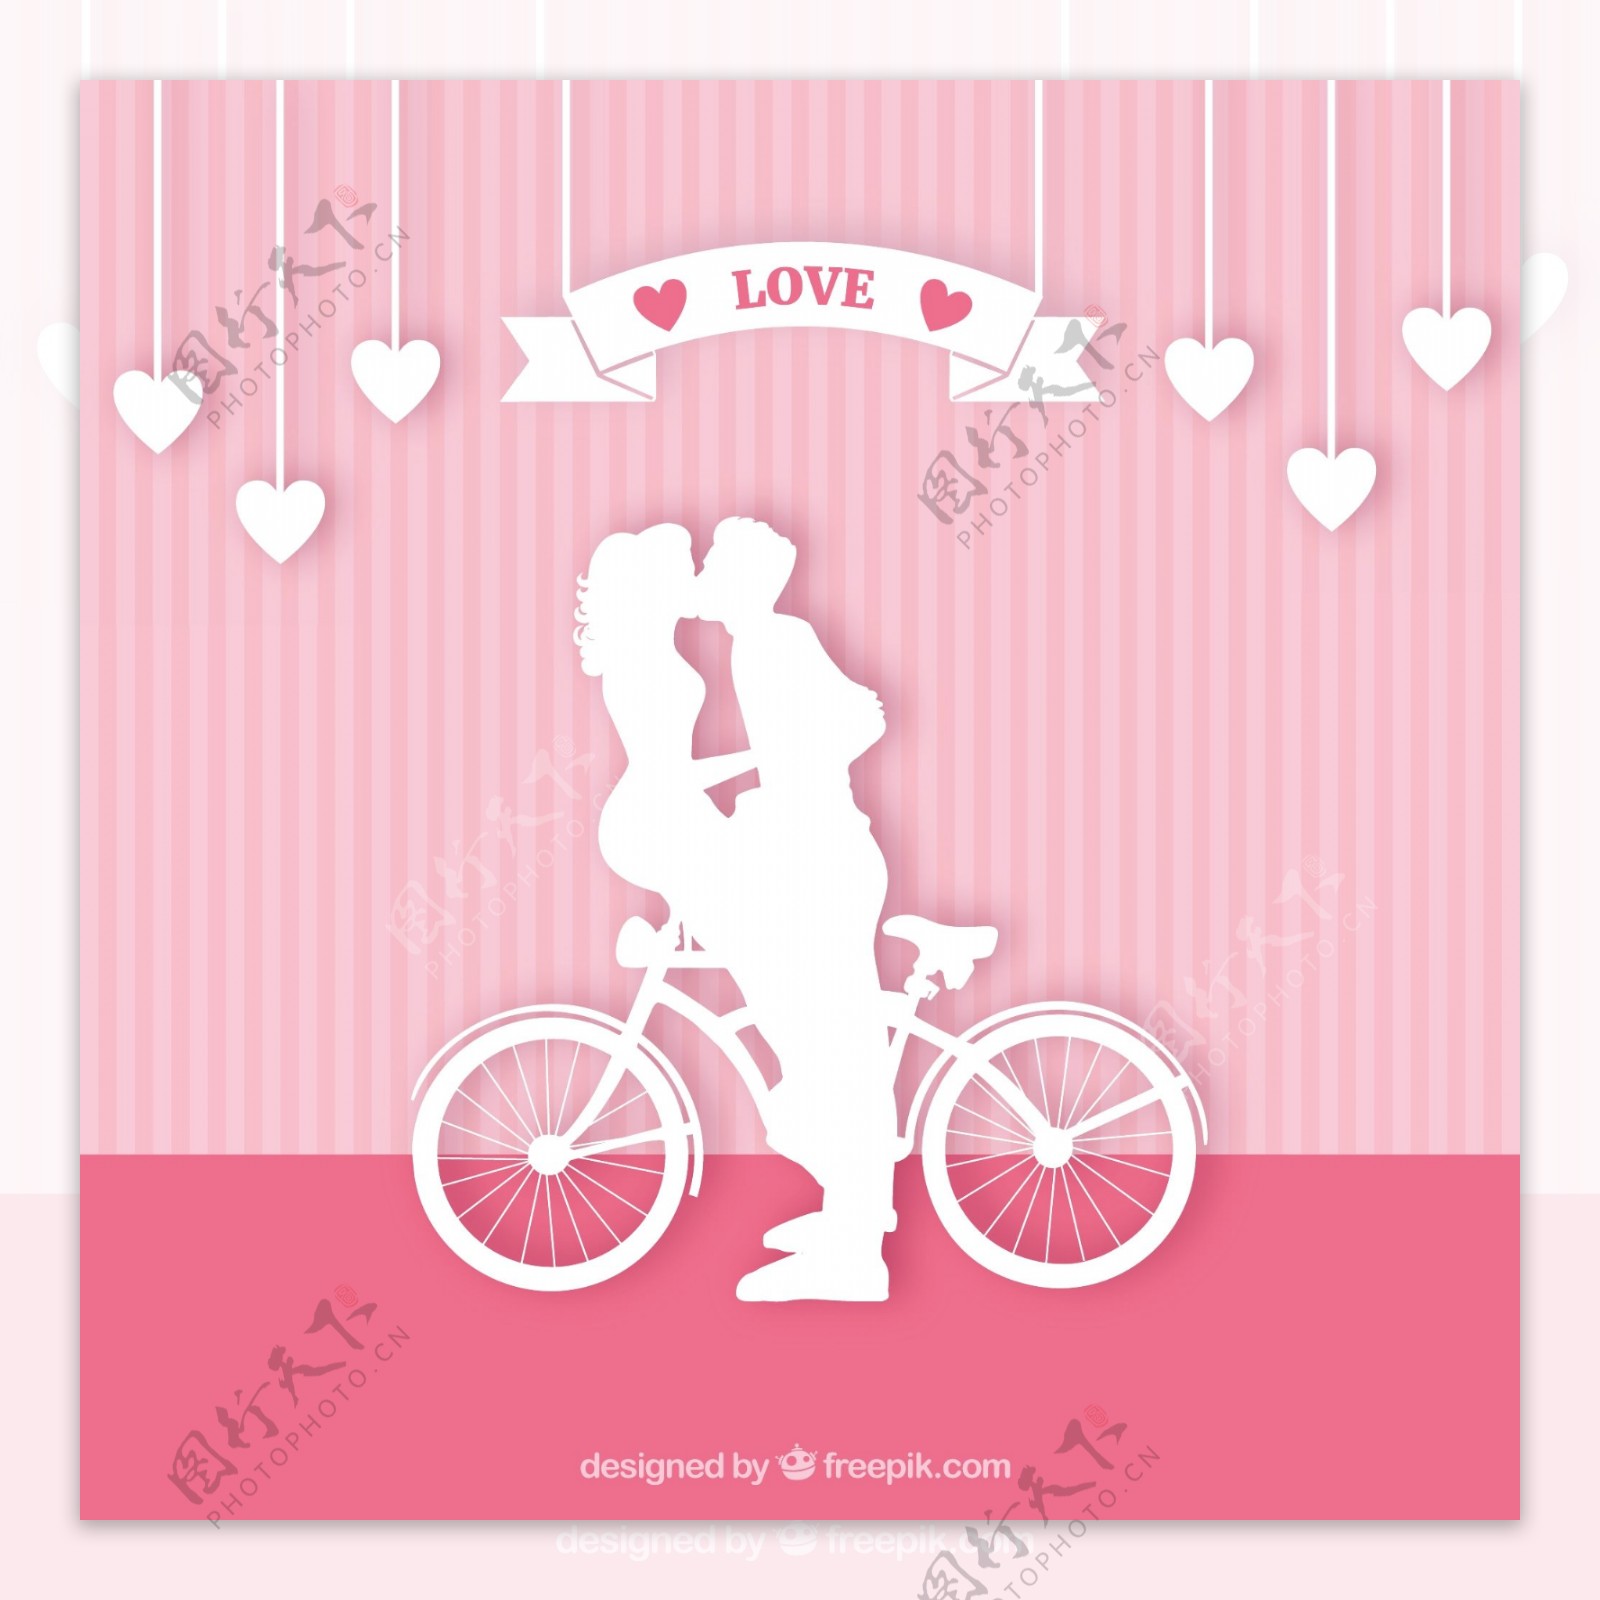 一对情侣在自行车上接吻的剪影